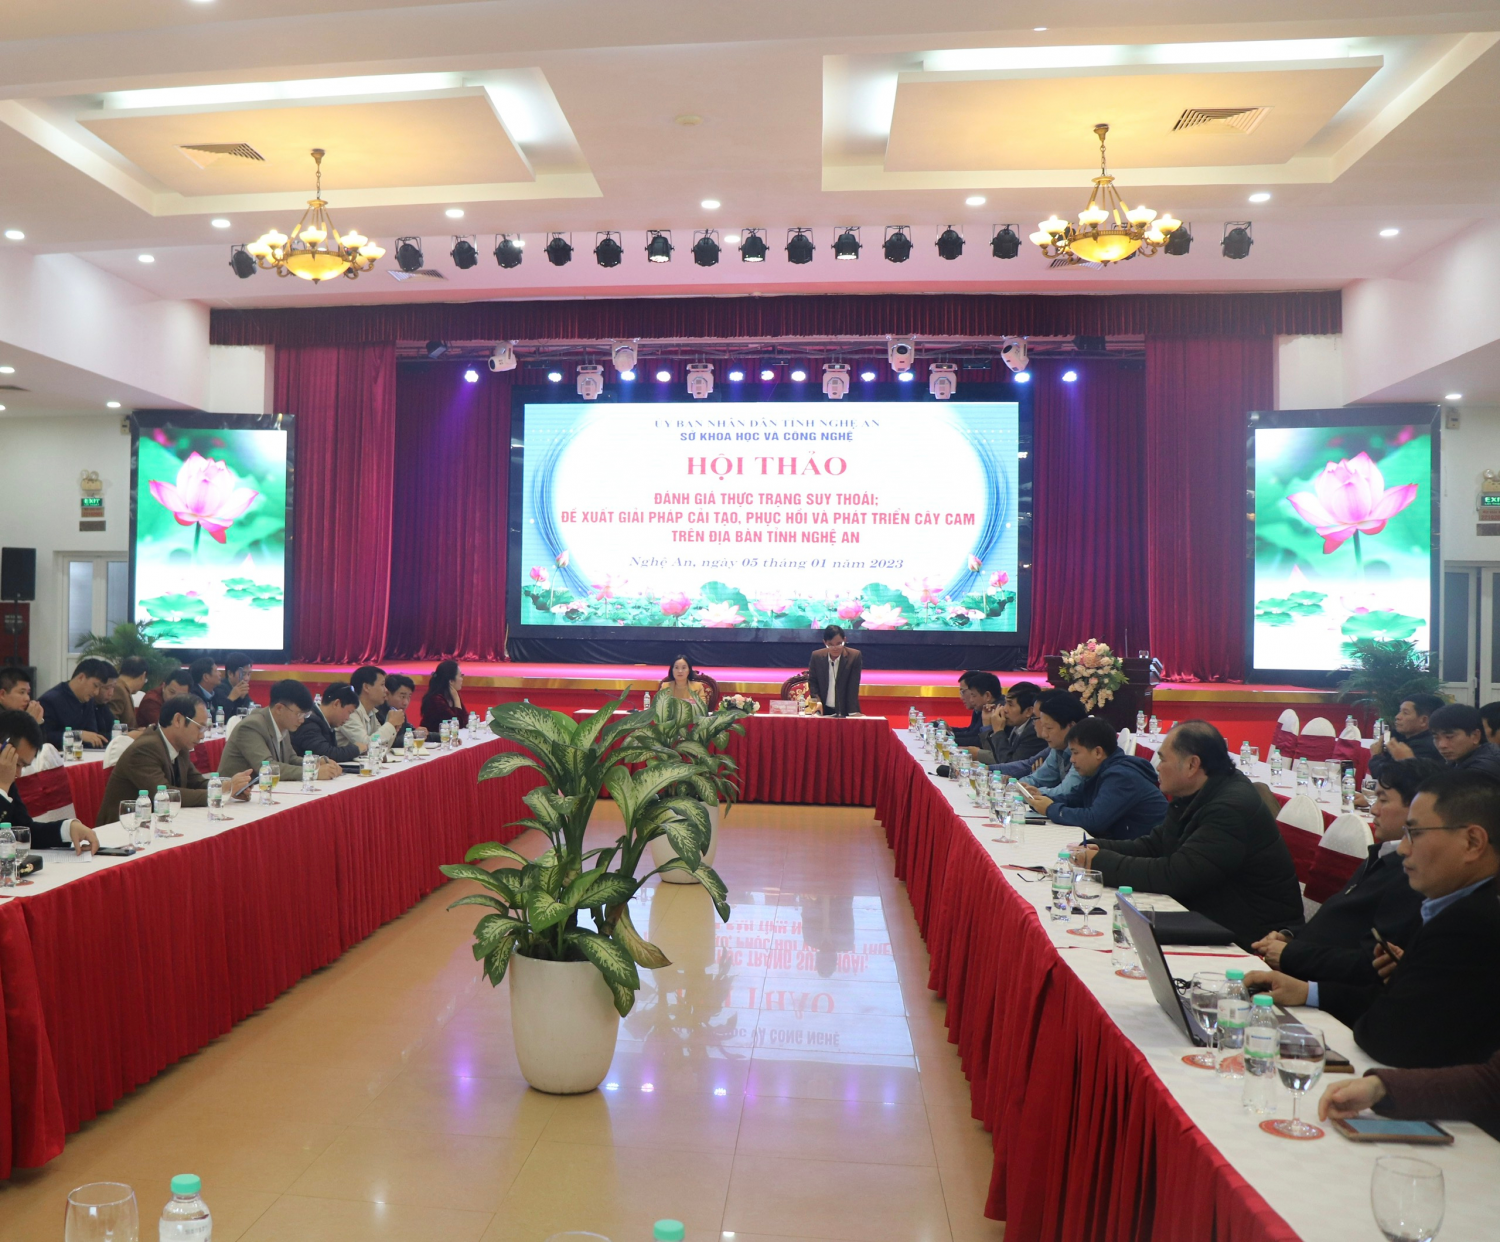 Hội thảo đánh giá thực trạng suy thoái, đề xuất giải pháp cải tạo, phục hồi và phát triển cây cam trên địa bàn tỉnh Nghệ An